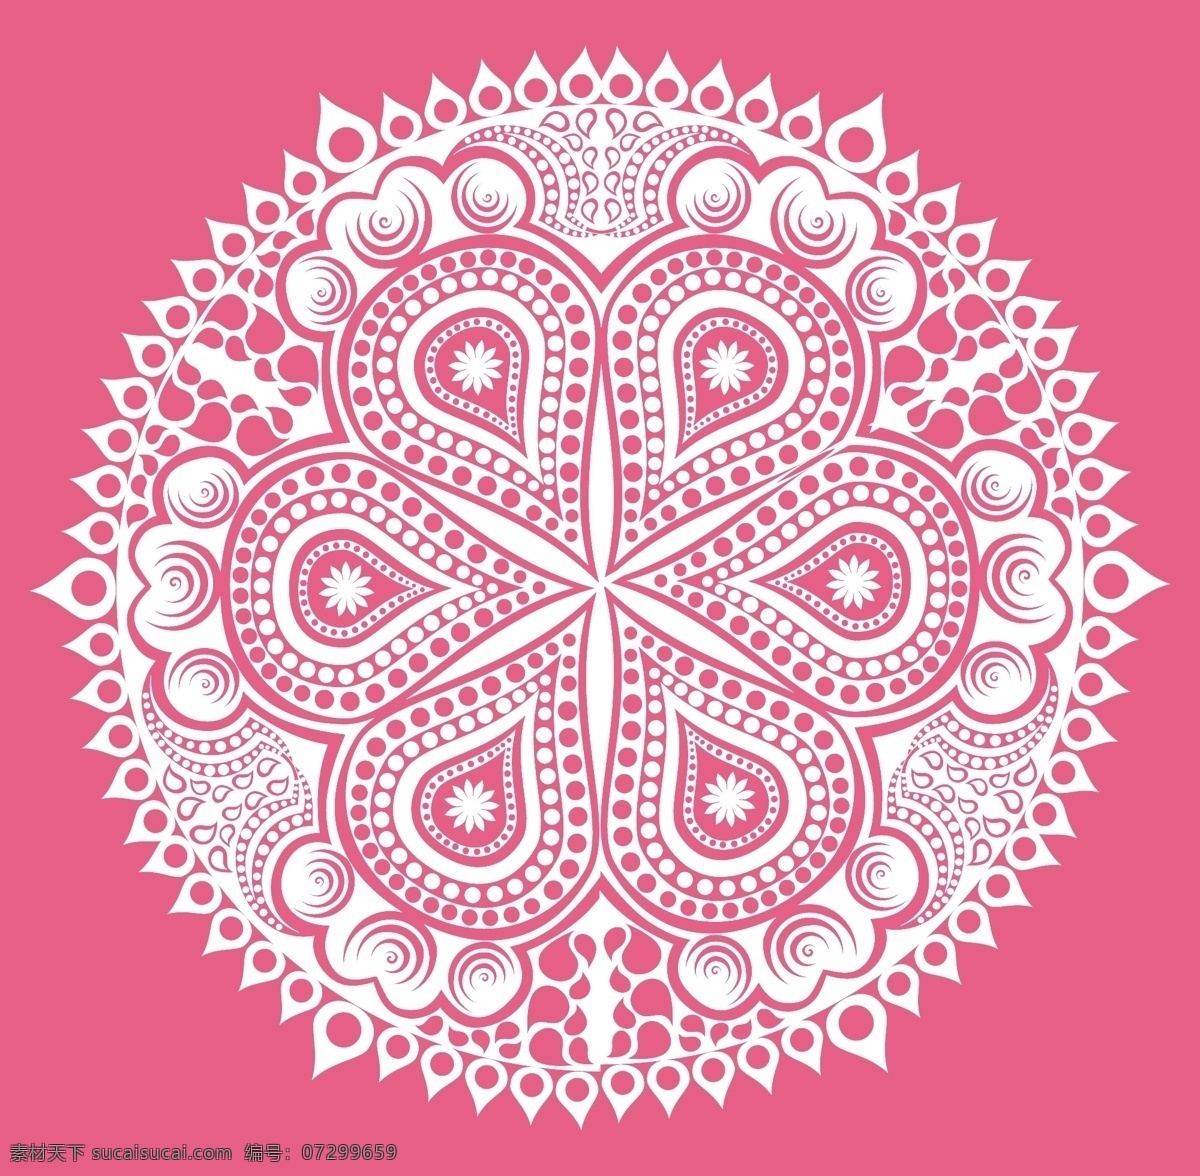 曼荼罗 背景 花 抽象 花卉 装饰 色彩 曼陀罗 粉红色 花的背景 墙纸 阿拉伯语 印度 形状 伊斯兰教 粉红色背景 丰富多彩